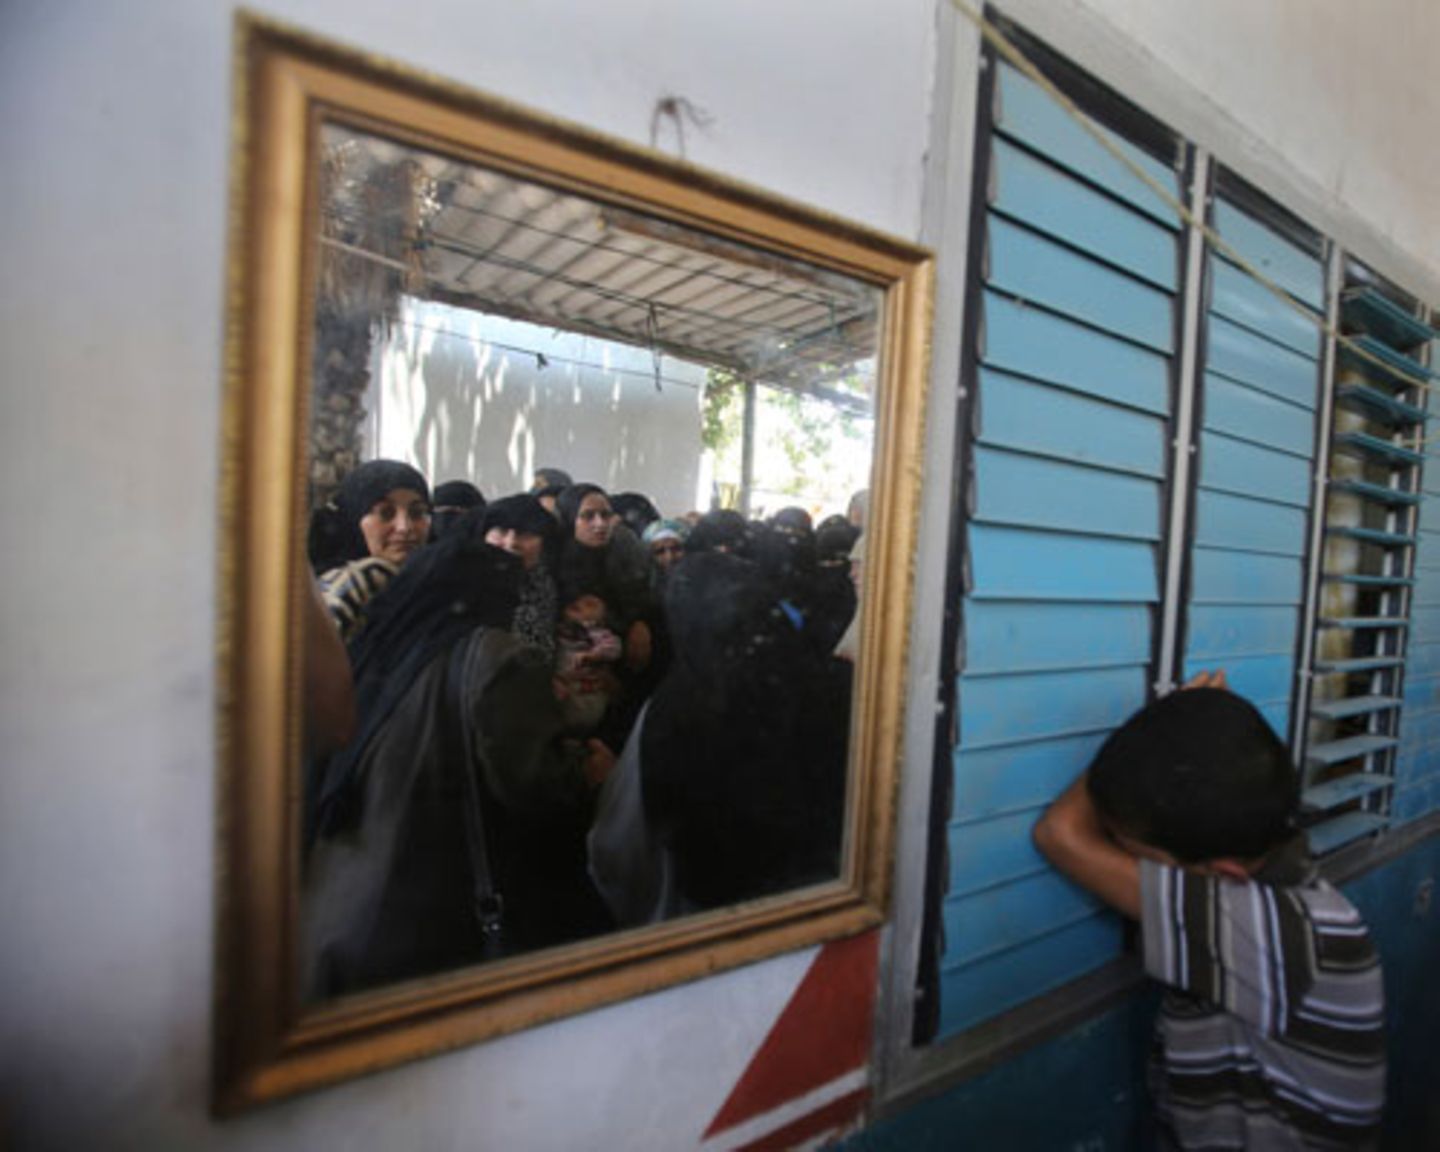 Ein palästinensischer Junge trauert um das vierjährige Mädchen Sarah Sheik al-Eid, das zusammen mit ihrem Vater und ihrem Onkel bei Luftangriffen getötet wurde. Im Spiegel sind Frauen zu sehen, die ebenfalls an der Trauerfeier in der Stadt Rafah teilnehmen.